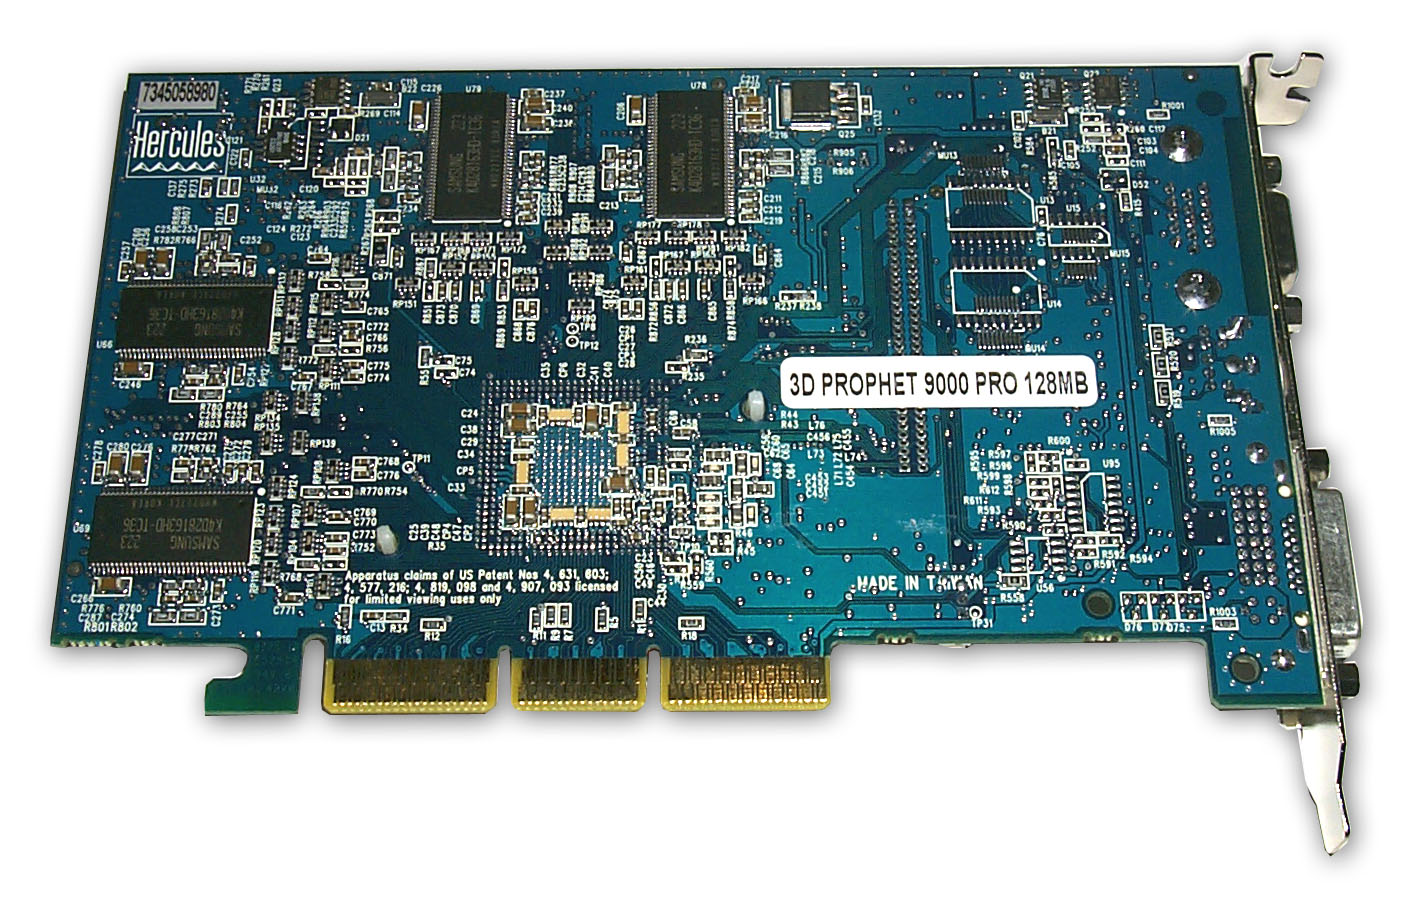 ATI Radeon 9000 Pro. ATI Mobility Radeon 9000 IGP. ATI Radeon 9000 Pro Mac. 9800 128 MB VGA Card.